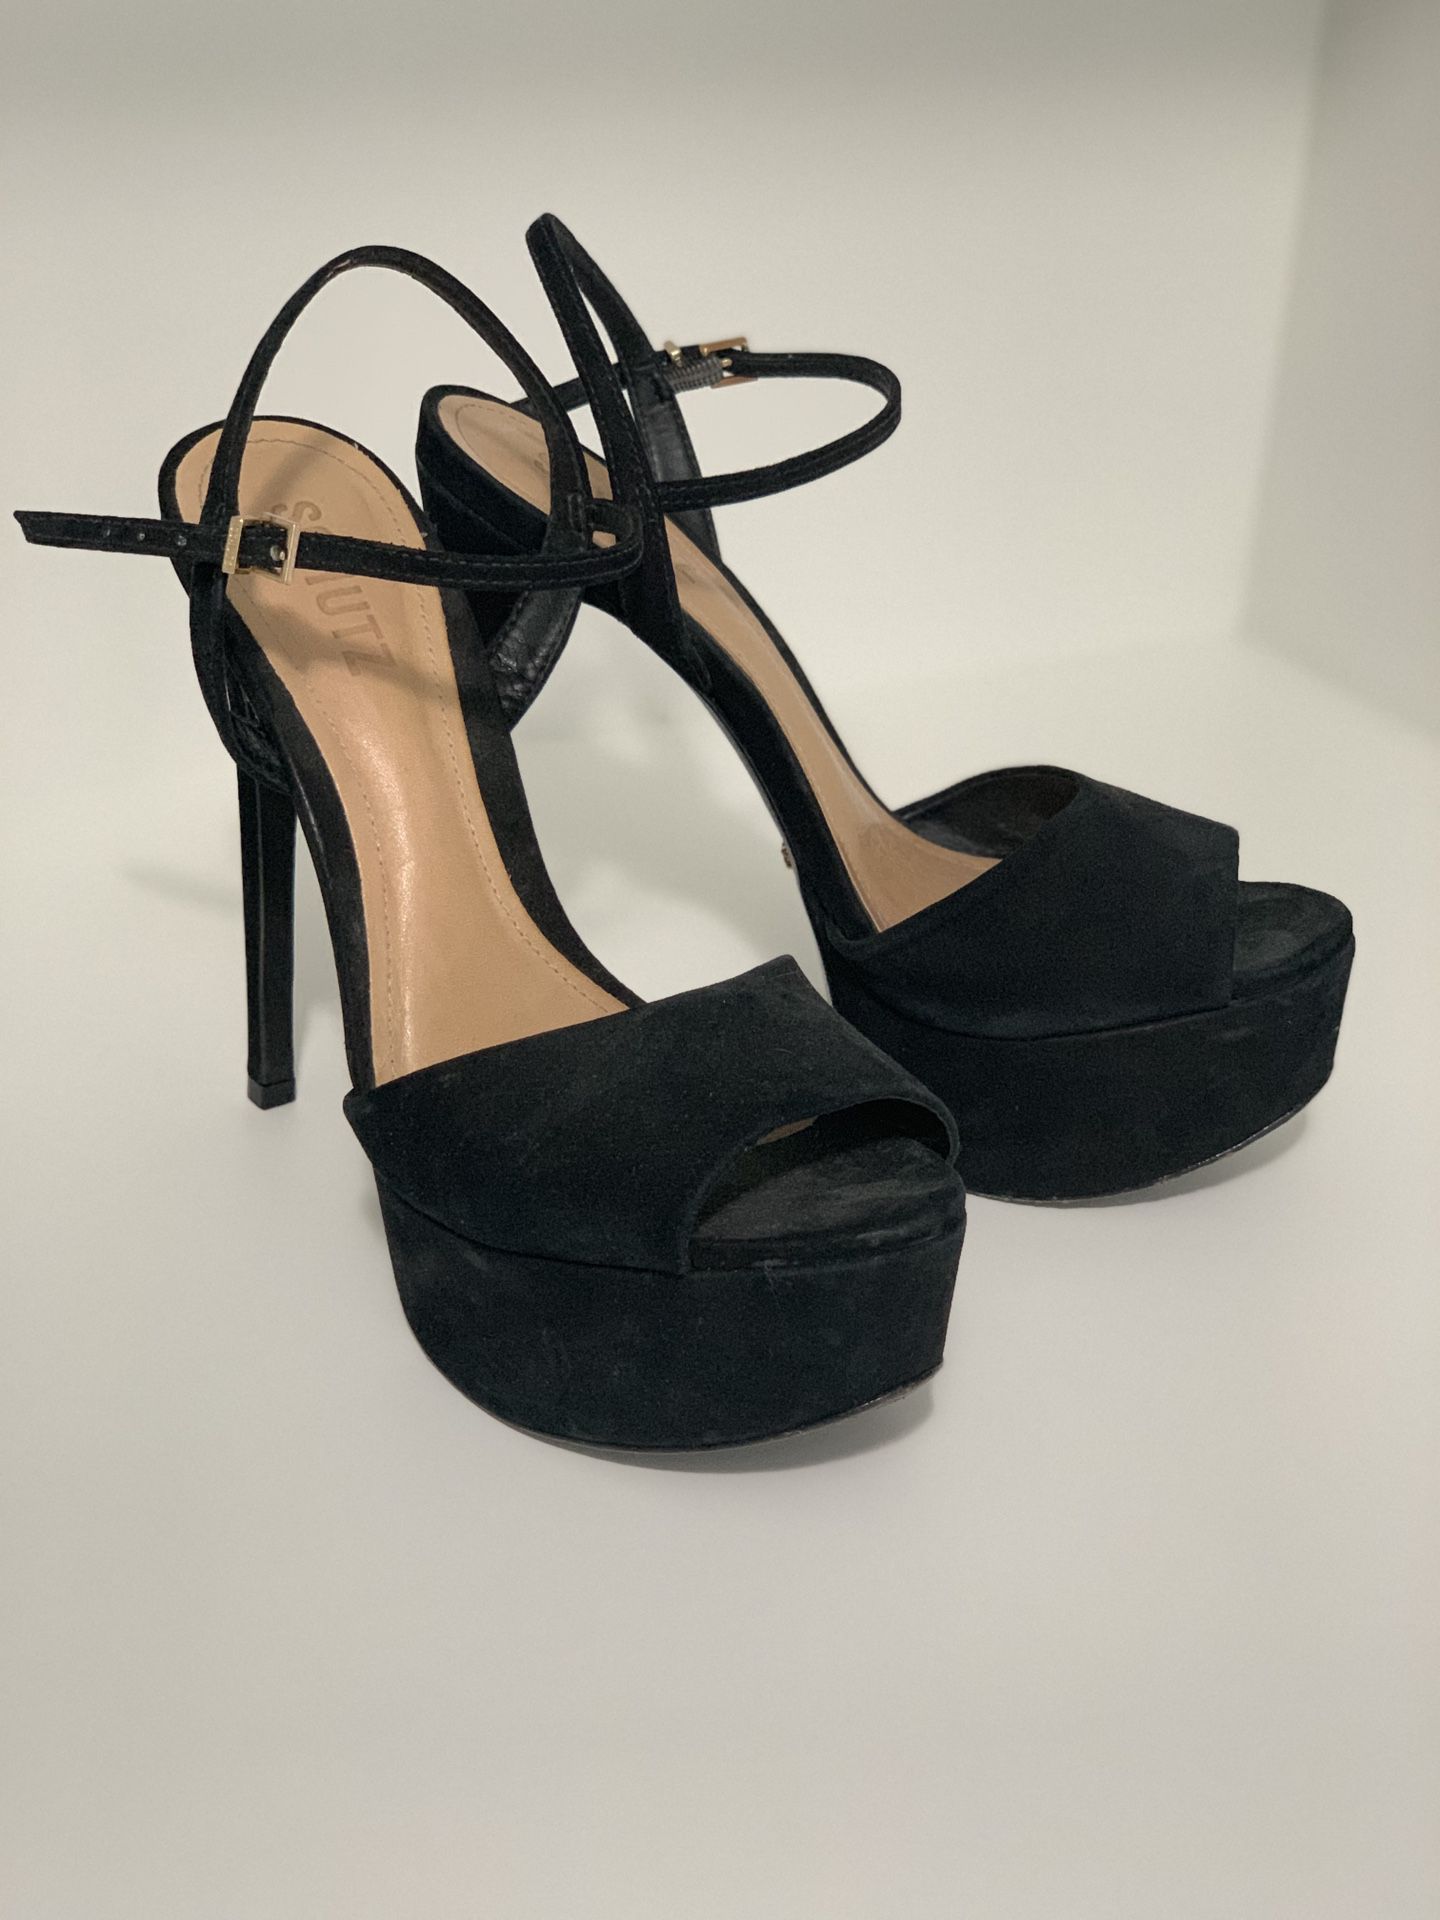 Schutz Platform Sandals in Black Velvet - BRA 37